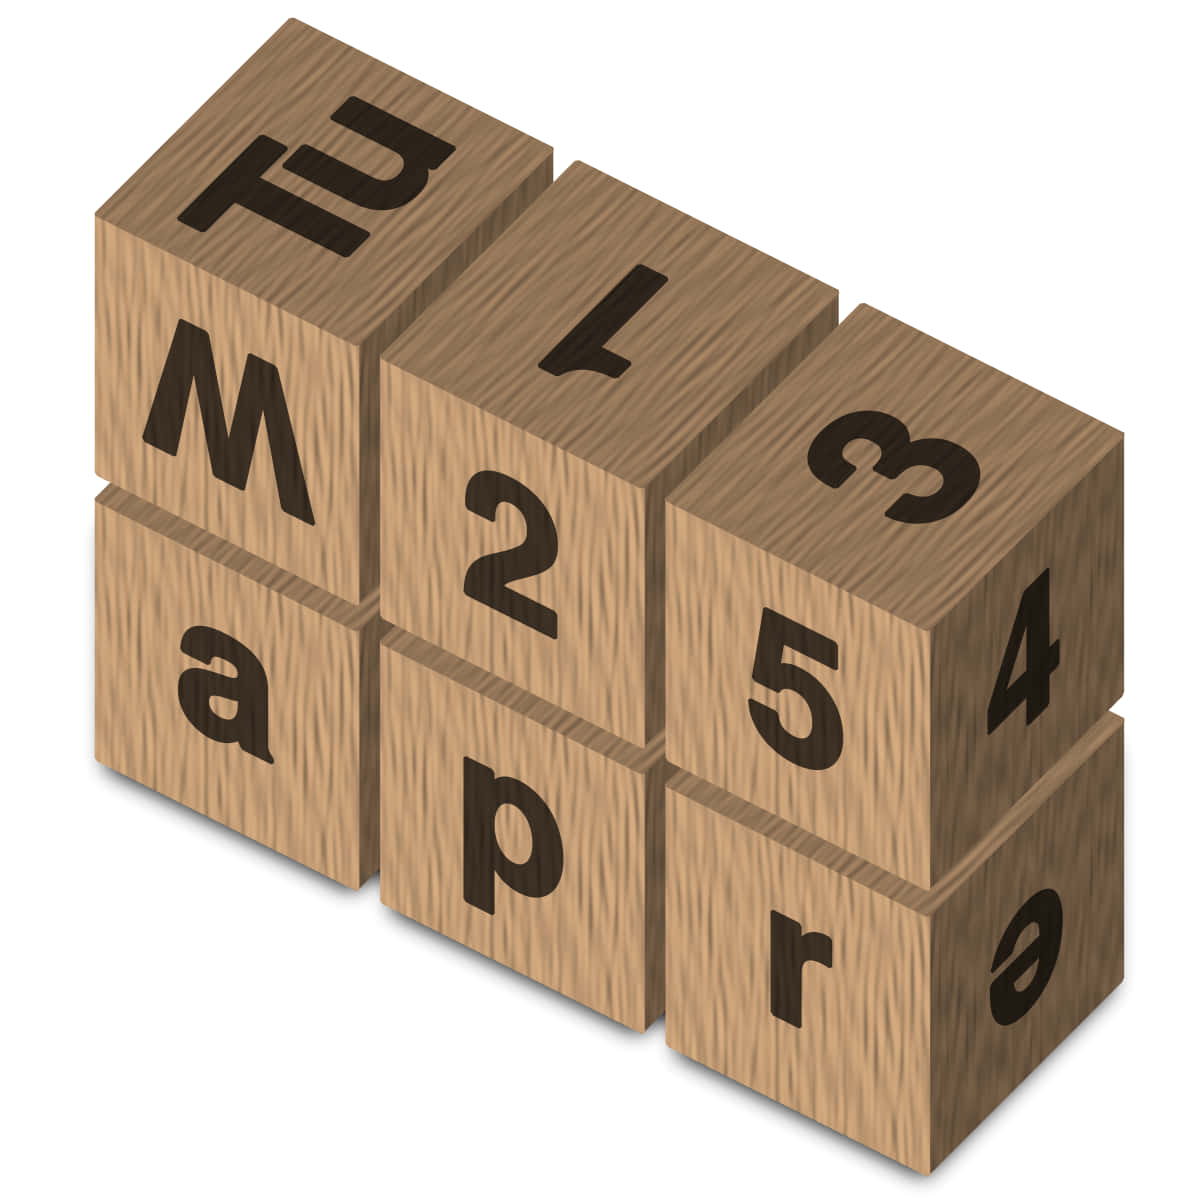 Игра числовые кубики. Числовой кубик. Календарь из кубиков. Календарь из двух кубиков с цифрами. Деревянный календарь с кубиками.